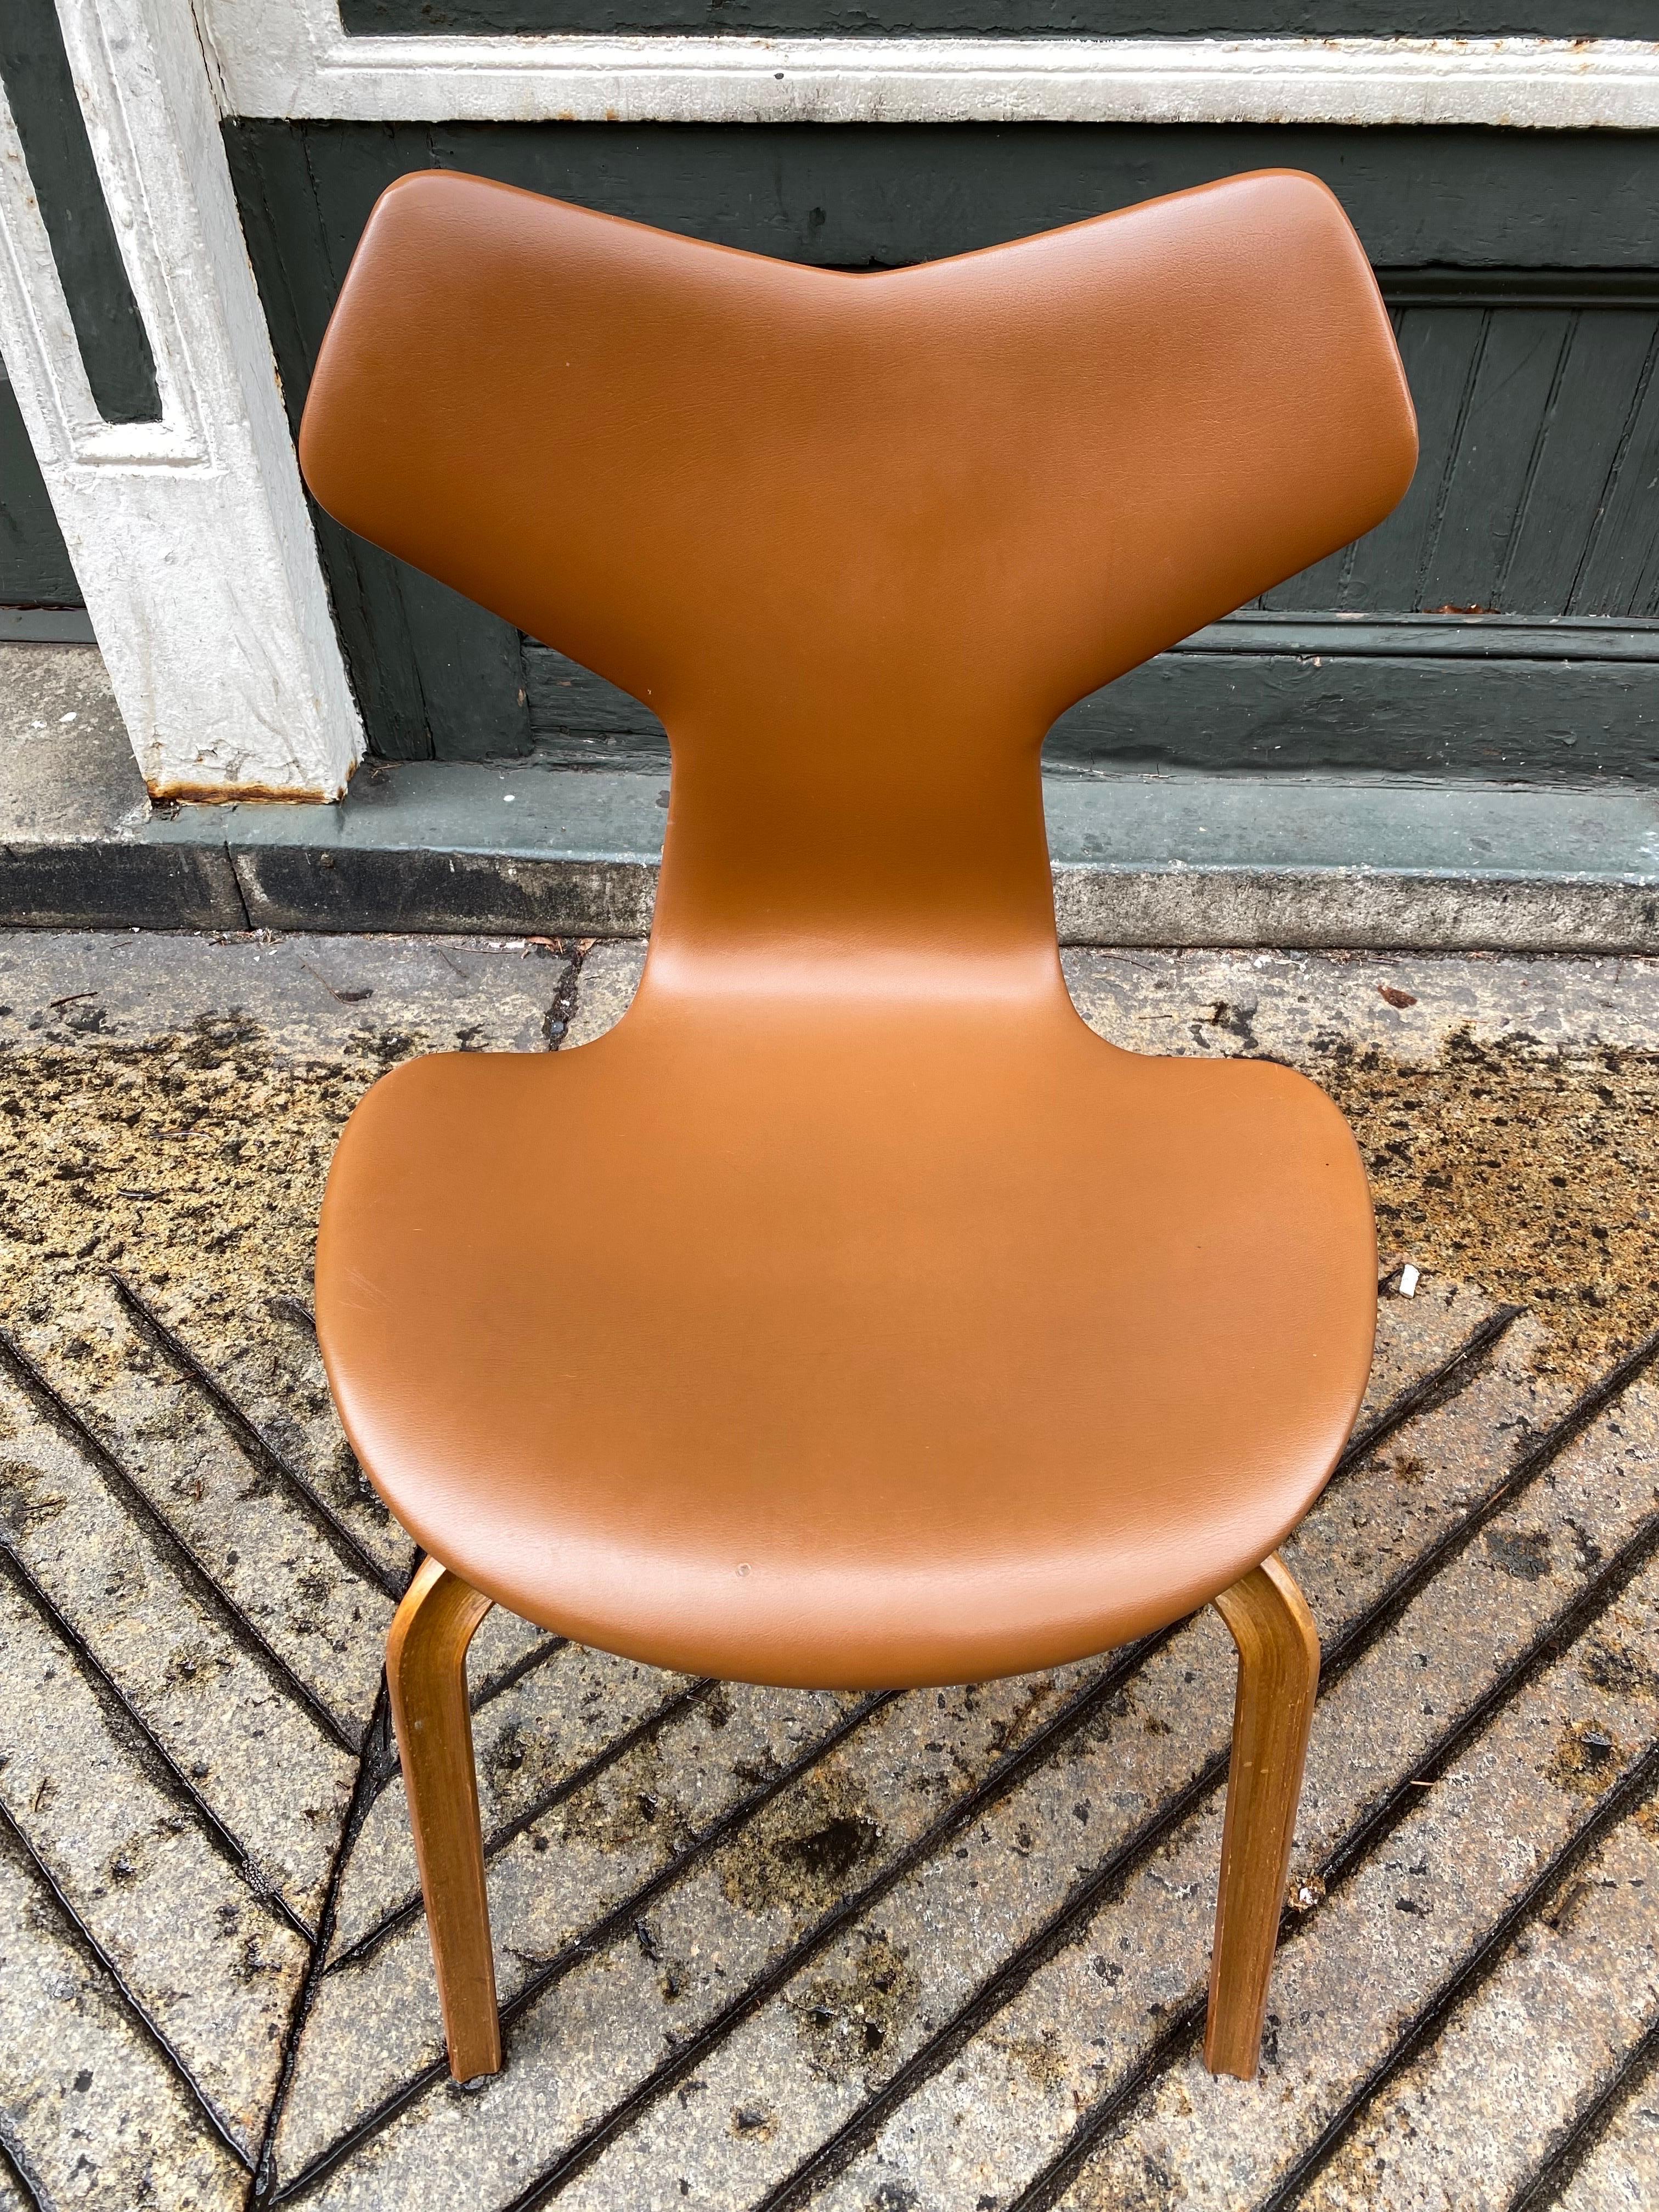 Arne Jacobsen Grand Prix Stuhl, Modell 4130. Original-Vinyl-Sitzbezug in sehr gutem Zustand. Ziemlich sauberes Exemplar, Wirbelsäule in gutem Zustand! Solider Stuhl, ideal für den Einsatz am Schreibtisch oder als zusätzlicher Stuhl für besondere